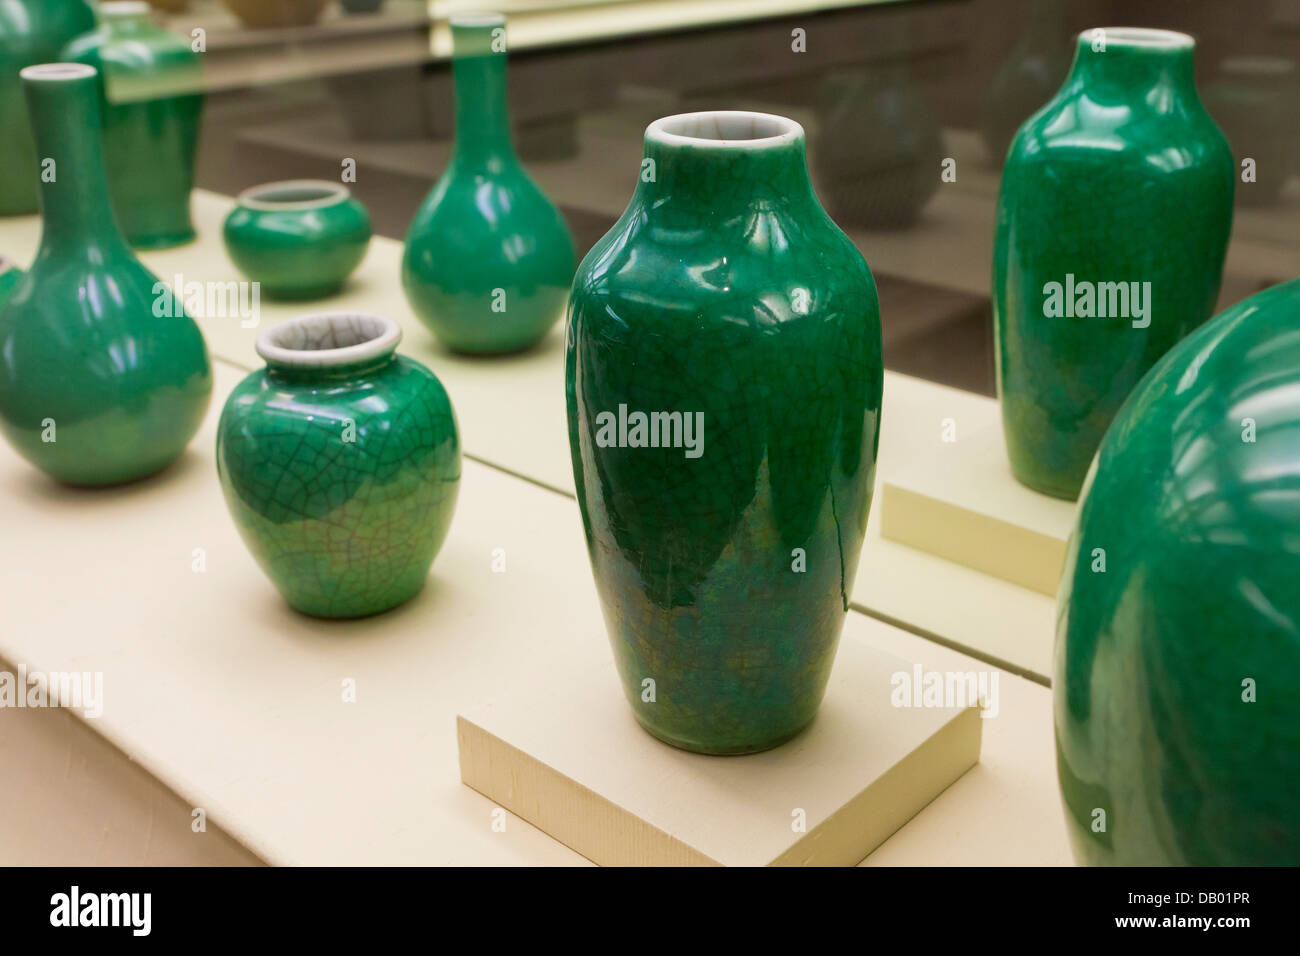 Vase de forme Meiping emaillé vert pomme, crackle porcelaine émaillée - Chine, dynastie Qing, xviiie siècle Banque D'Images